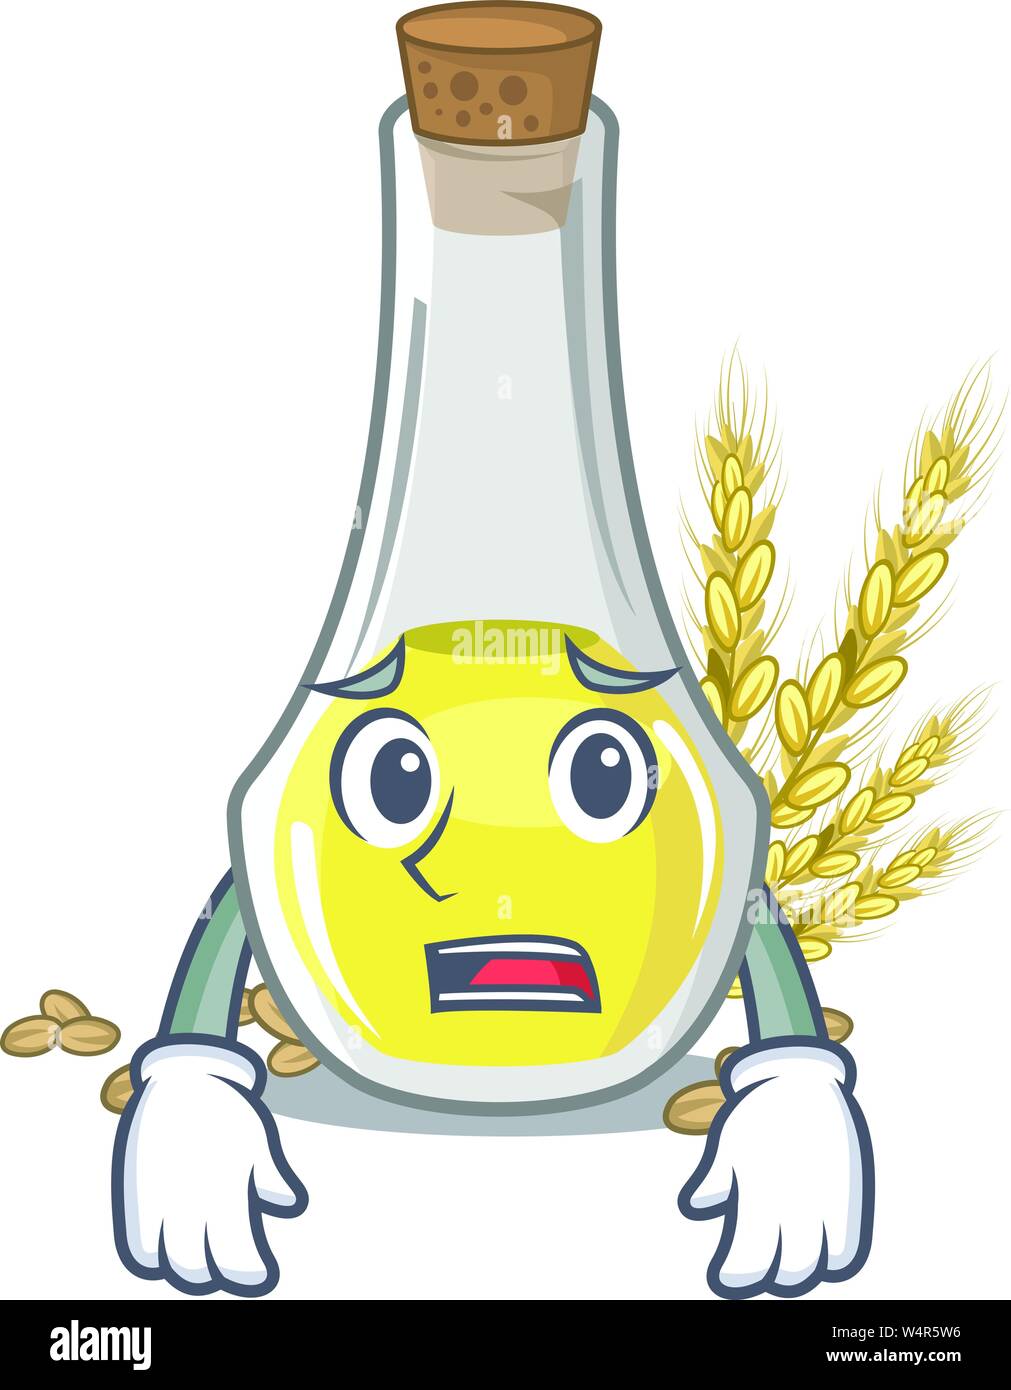 Afraid wheat germ oil in a cartoon vector illustration Stock Vector